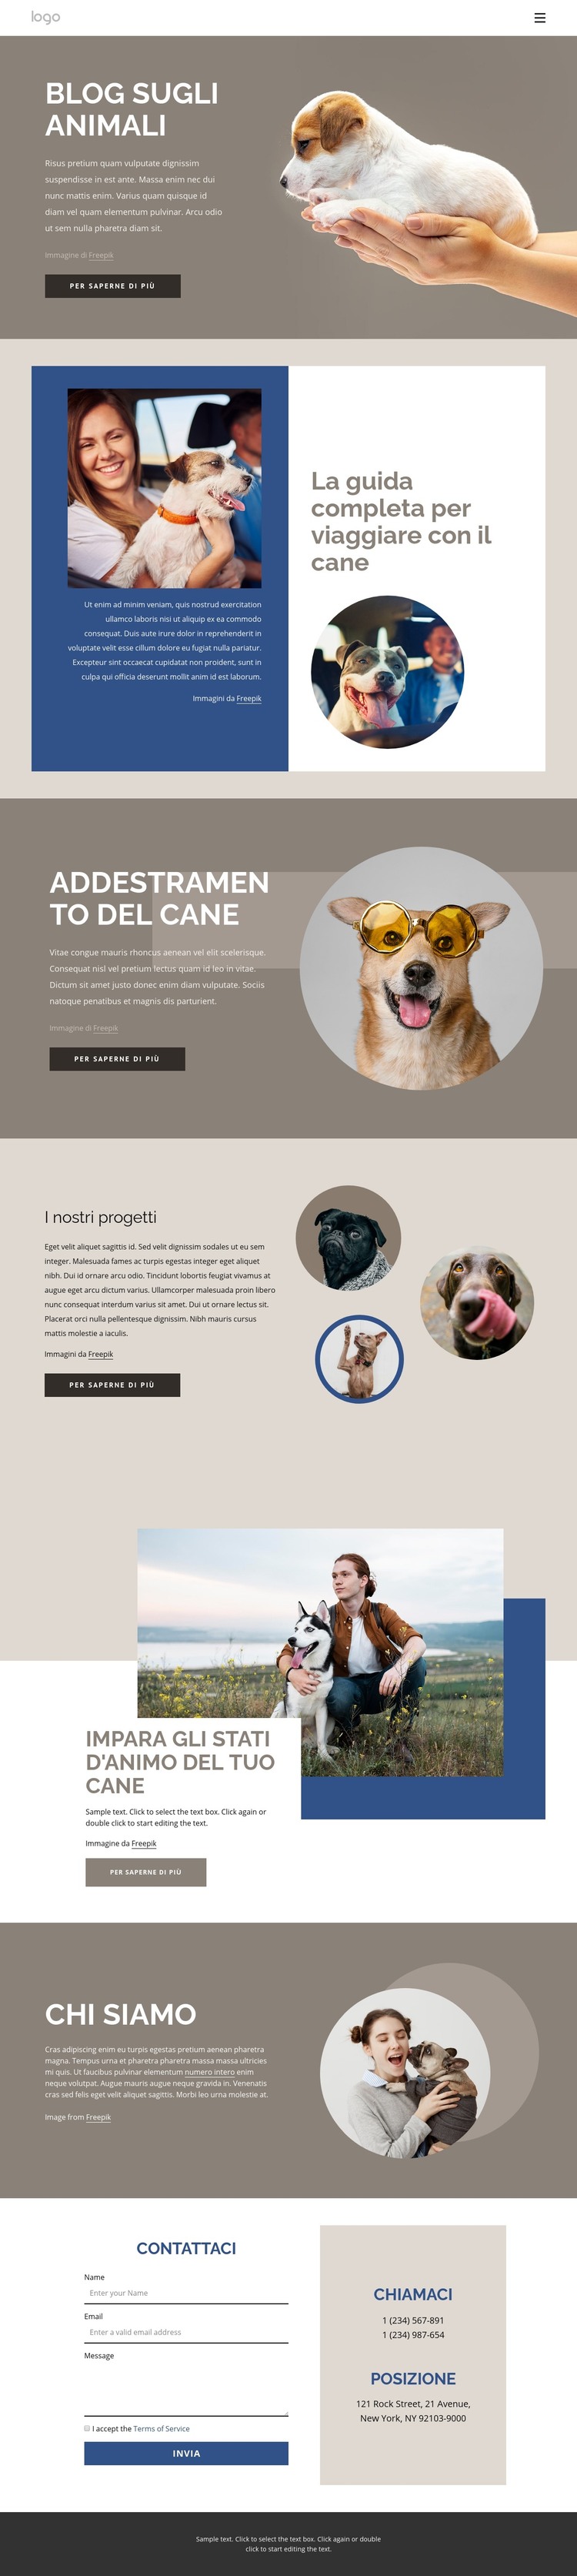 Blog sugli animali domestici Modello HTML